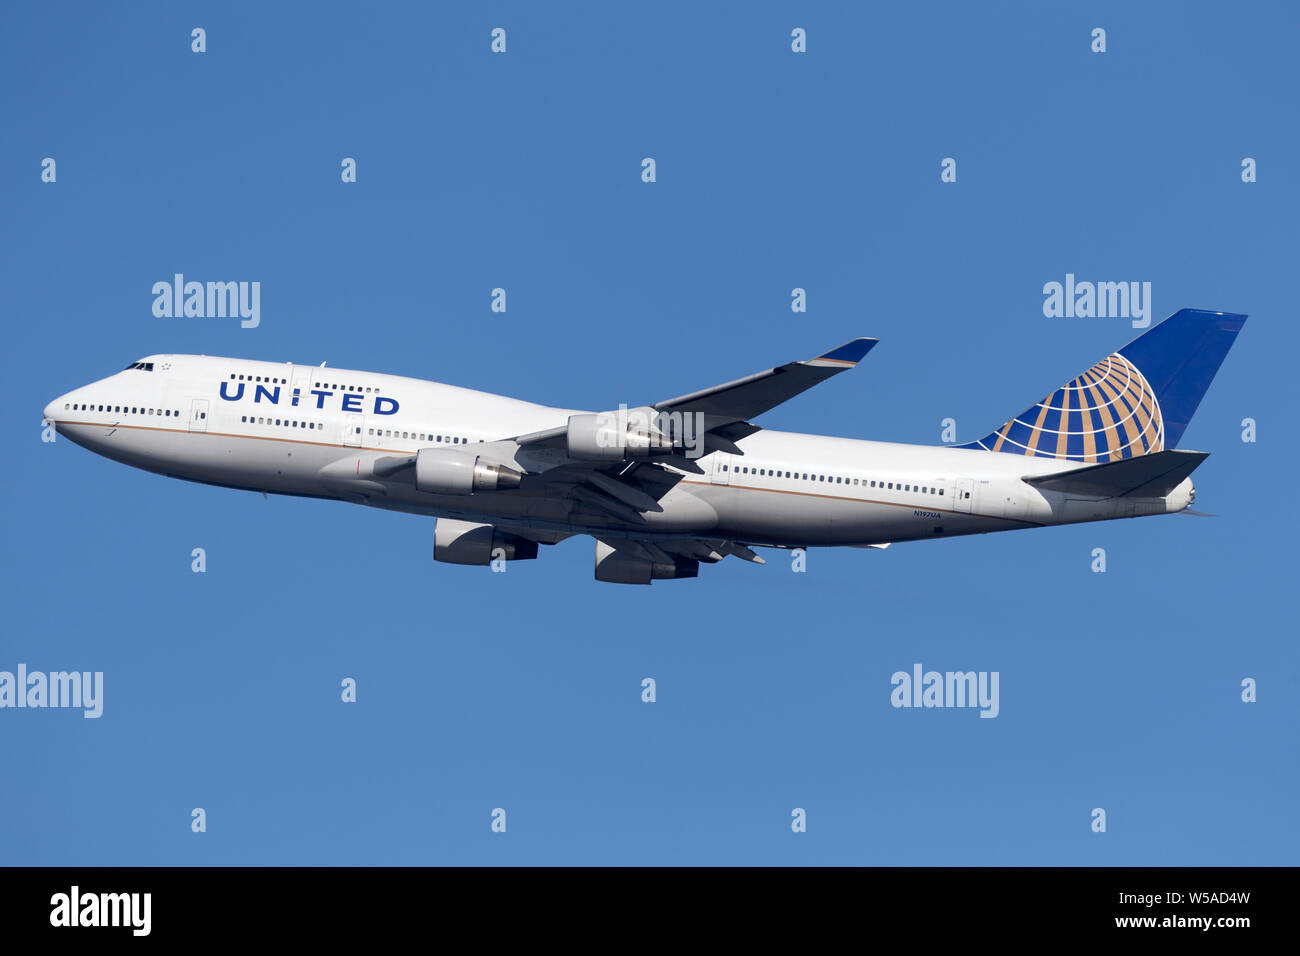 United Airlines Boeing 747 jumbo jet avion de décoller de l'aéroport de Sydney. Banque D'Images